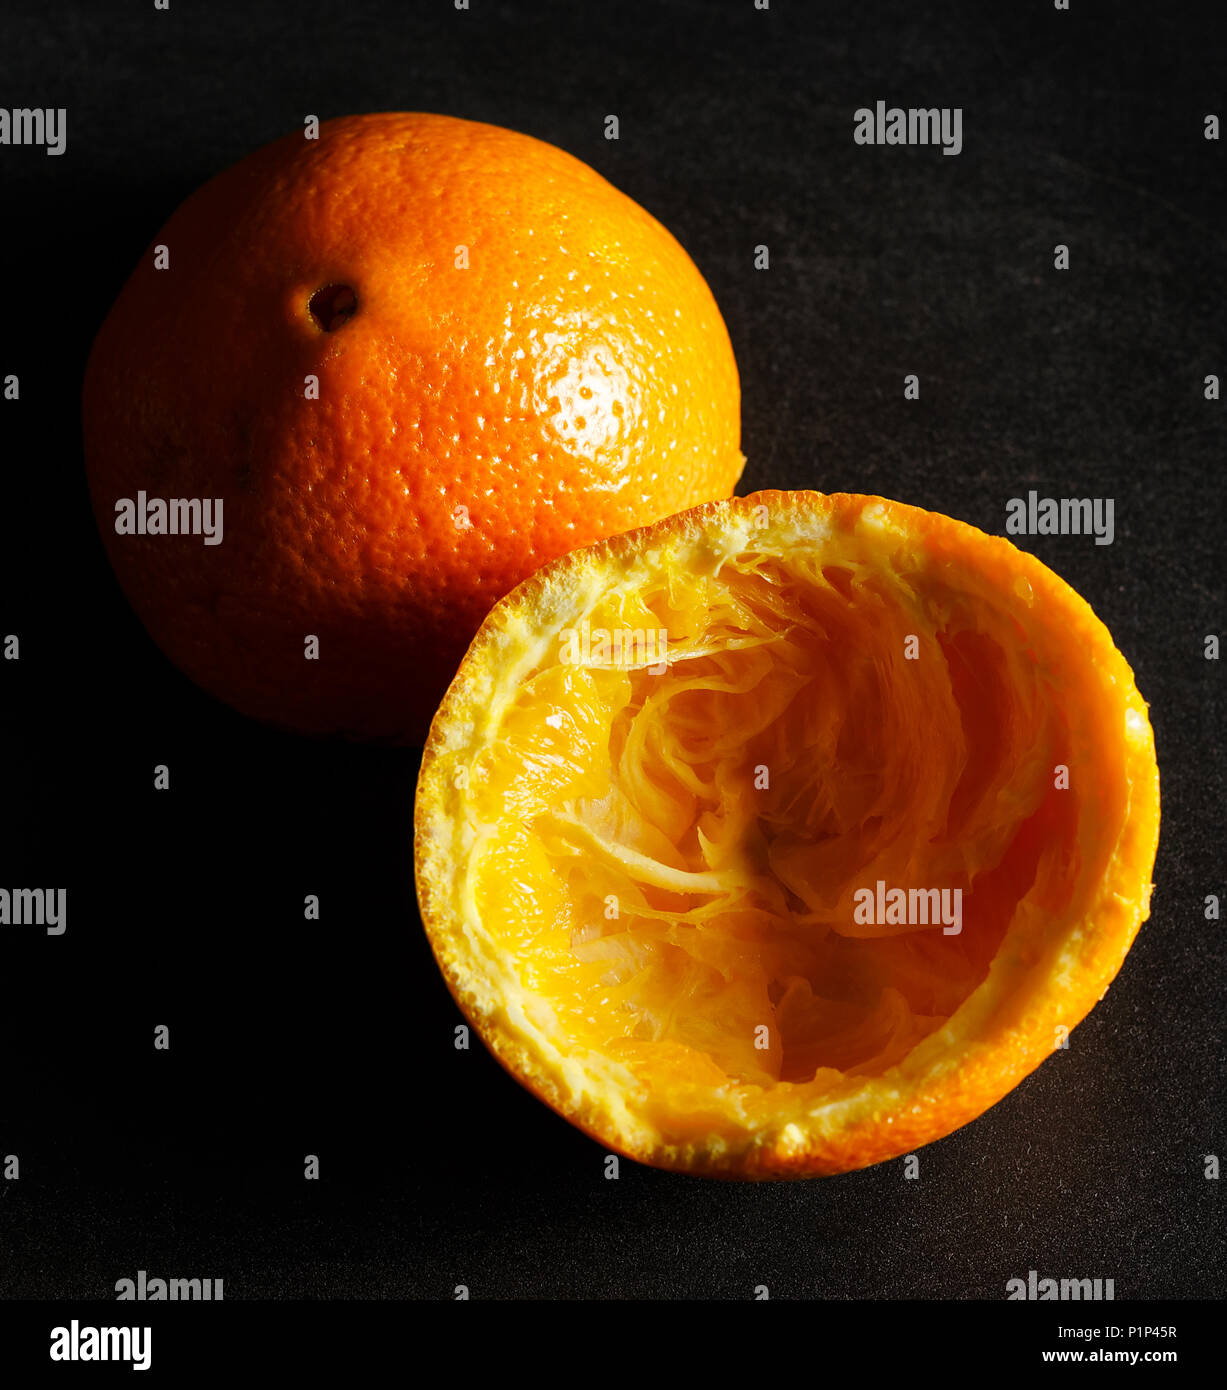 Used orange skins with dramatic light on black background. Square image. Stock Photo